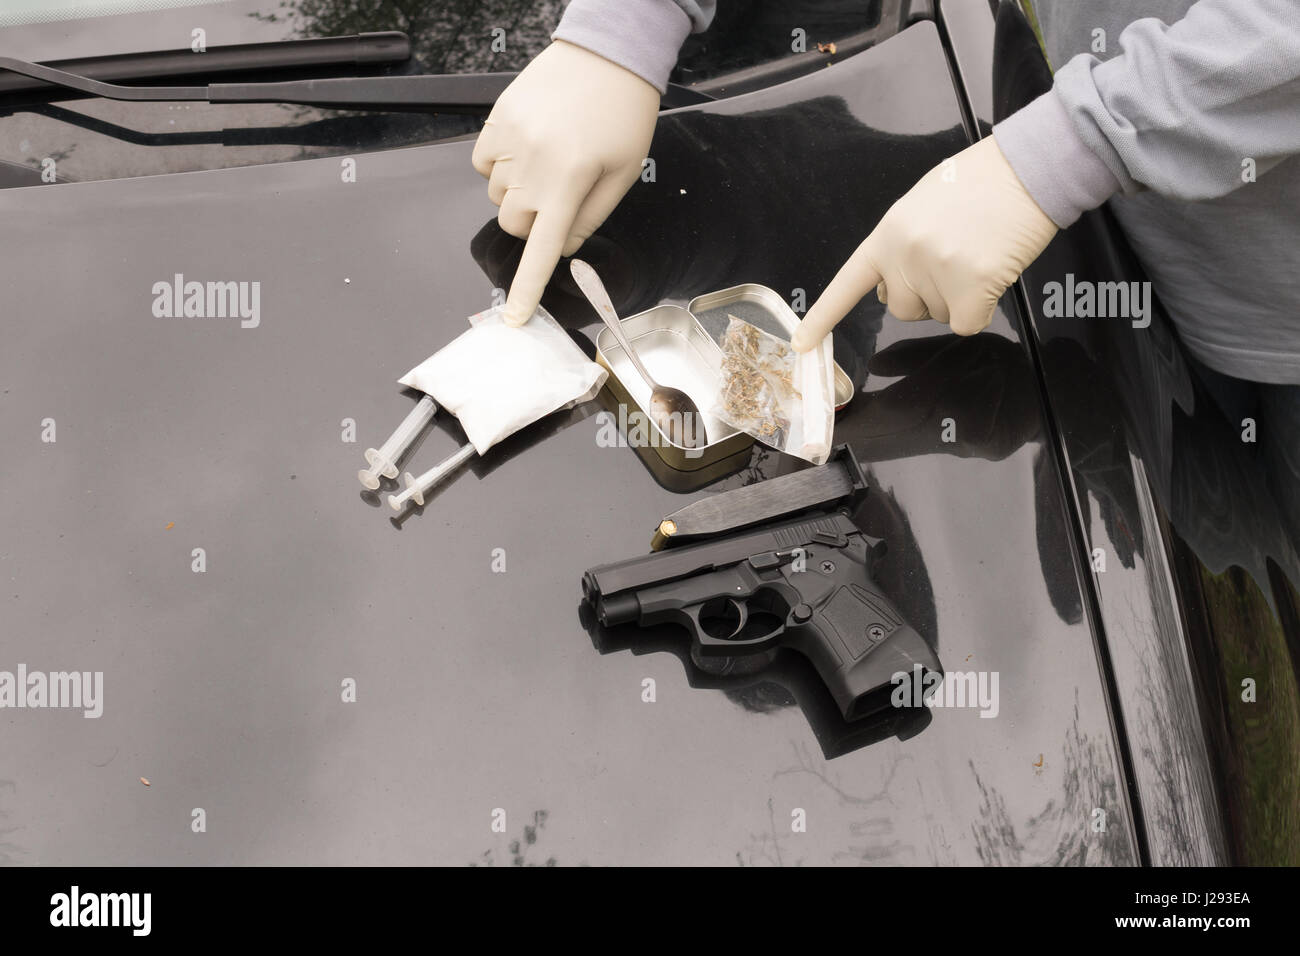 Menge von Drogen auf Tisch mit Waffen, von der österreichischen Polizei beschlagnahmt Kriminalität Händler Stockfoto